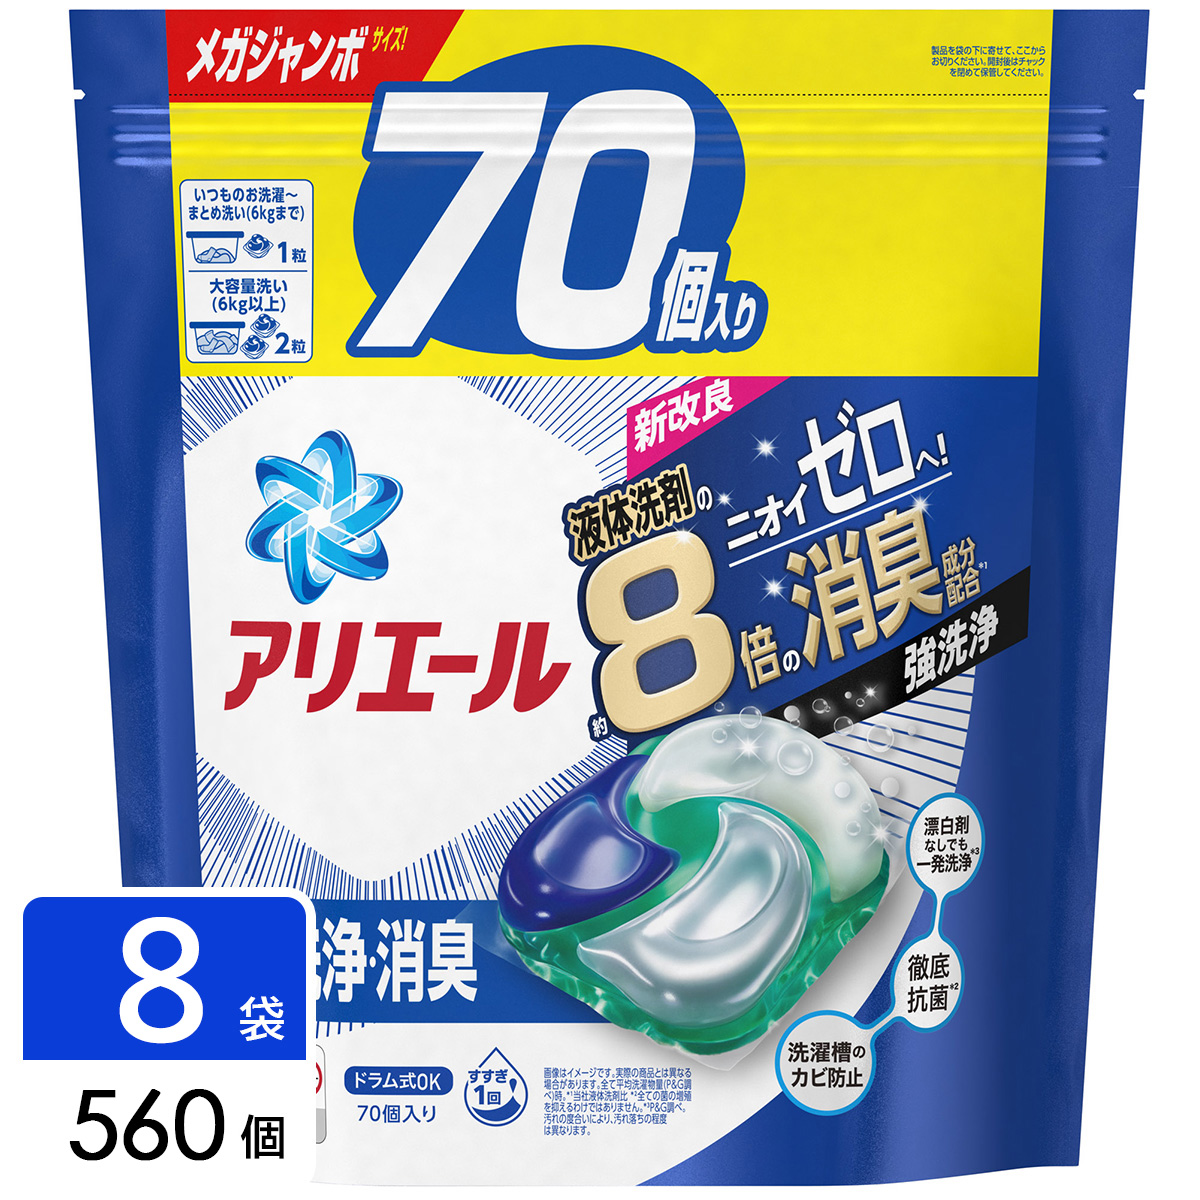 アリエール 洗濯洗剤 ジェルボール4D 詰め替え メガジャンボ 560個(70個×4袋×2箱)